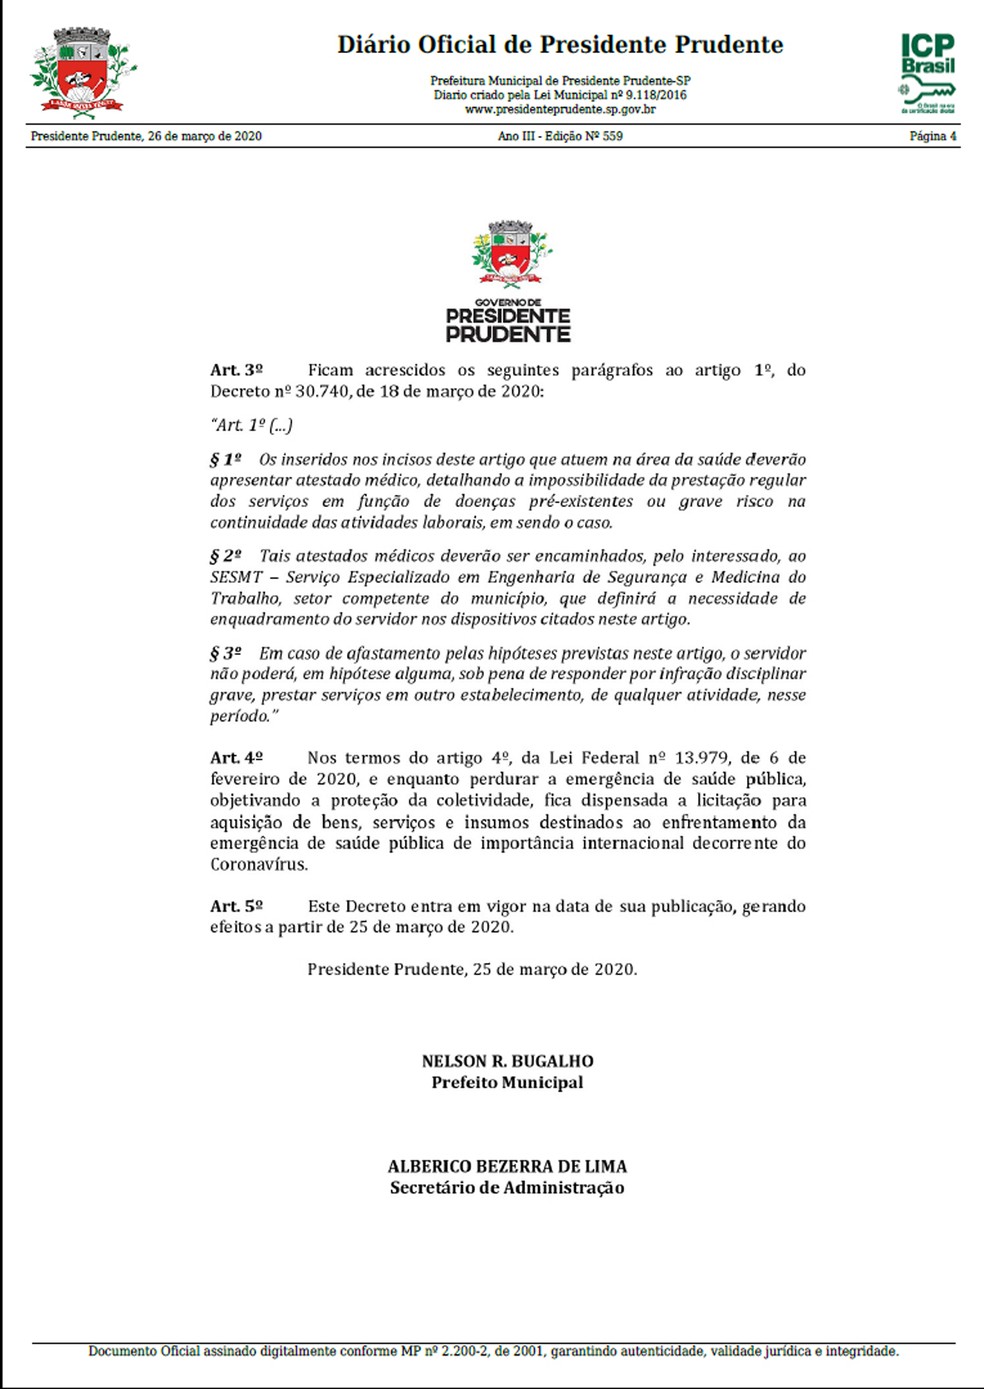 Decreto declara situao de emergncia em Presidente Prudente  Foto: Reproduo